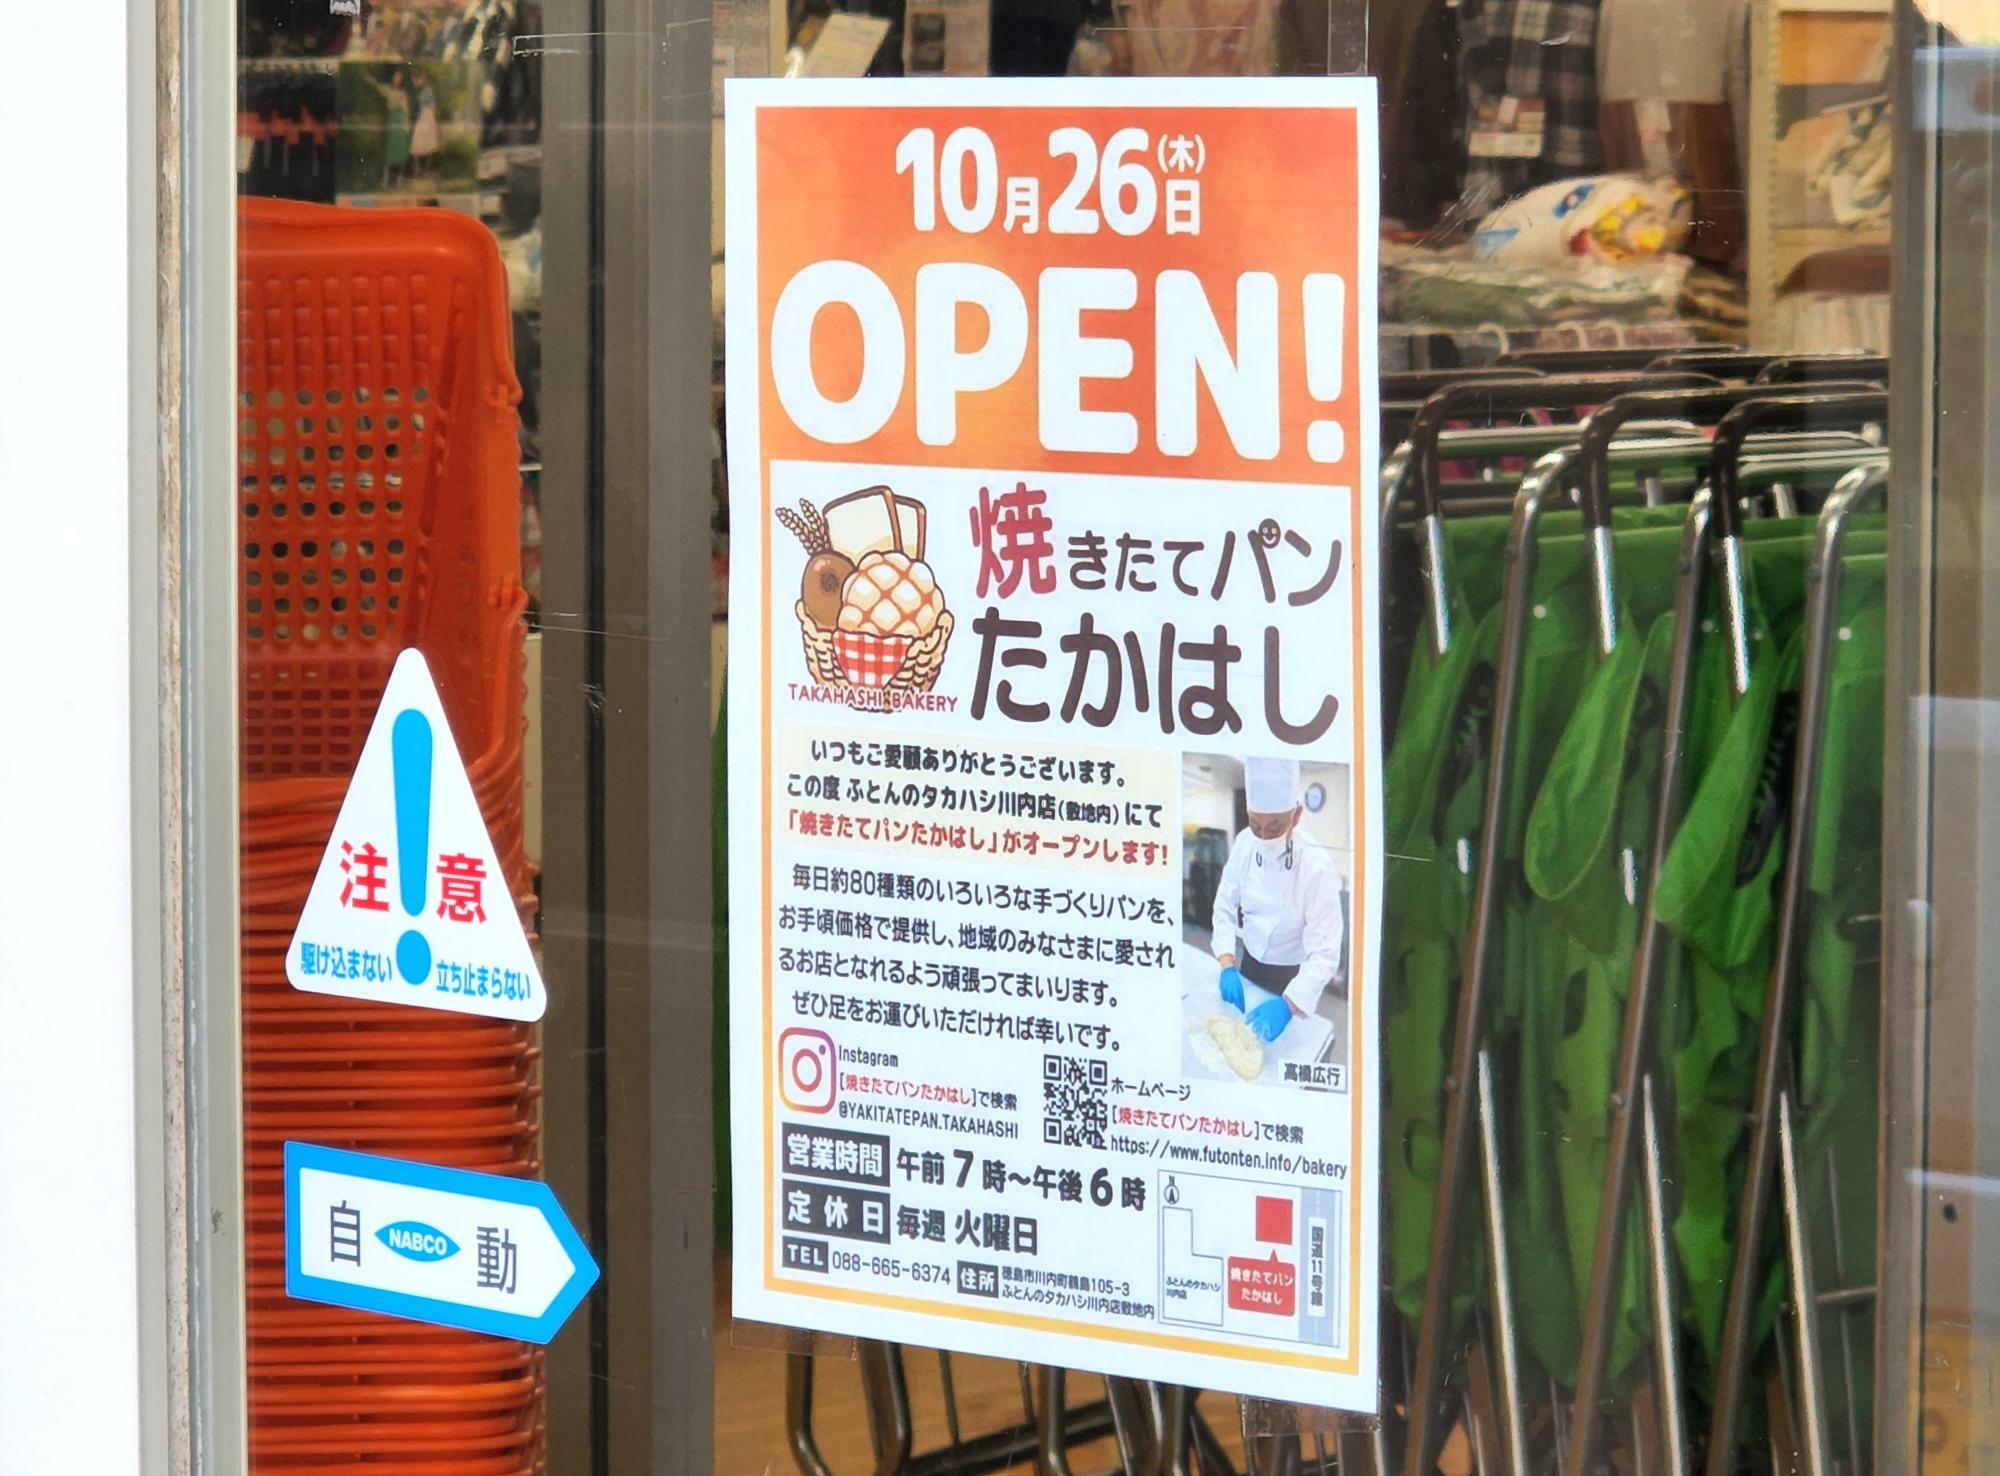 「ふとんのタカハシ 川内店」の自動ドアに貼られていた「焼きたてパン たかはし」についての貼り紙。